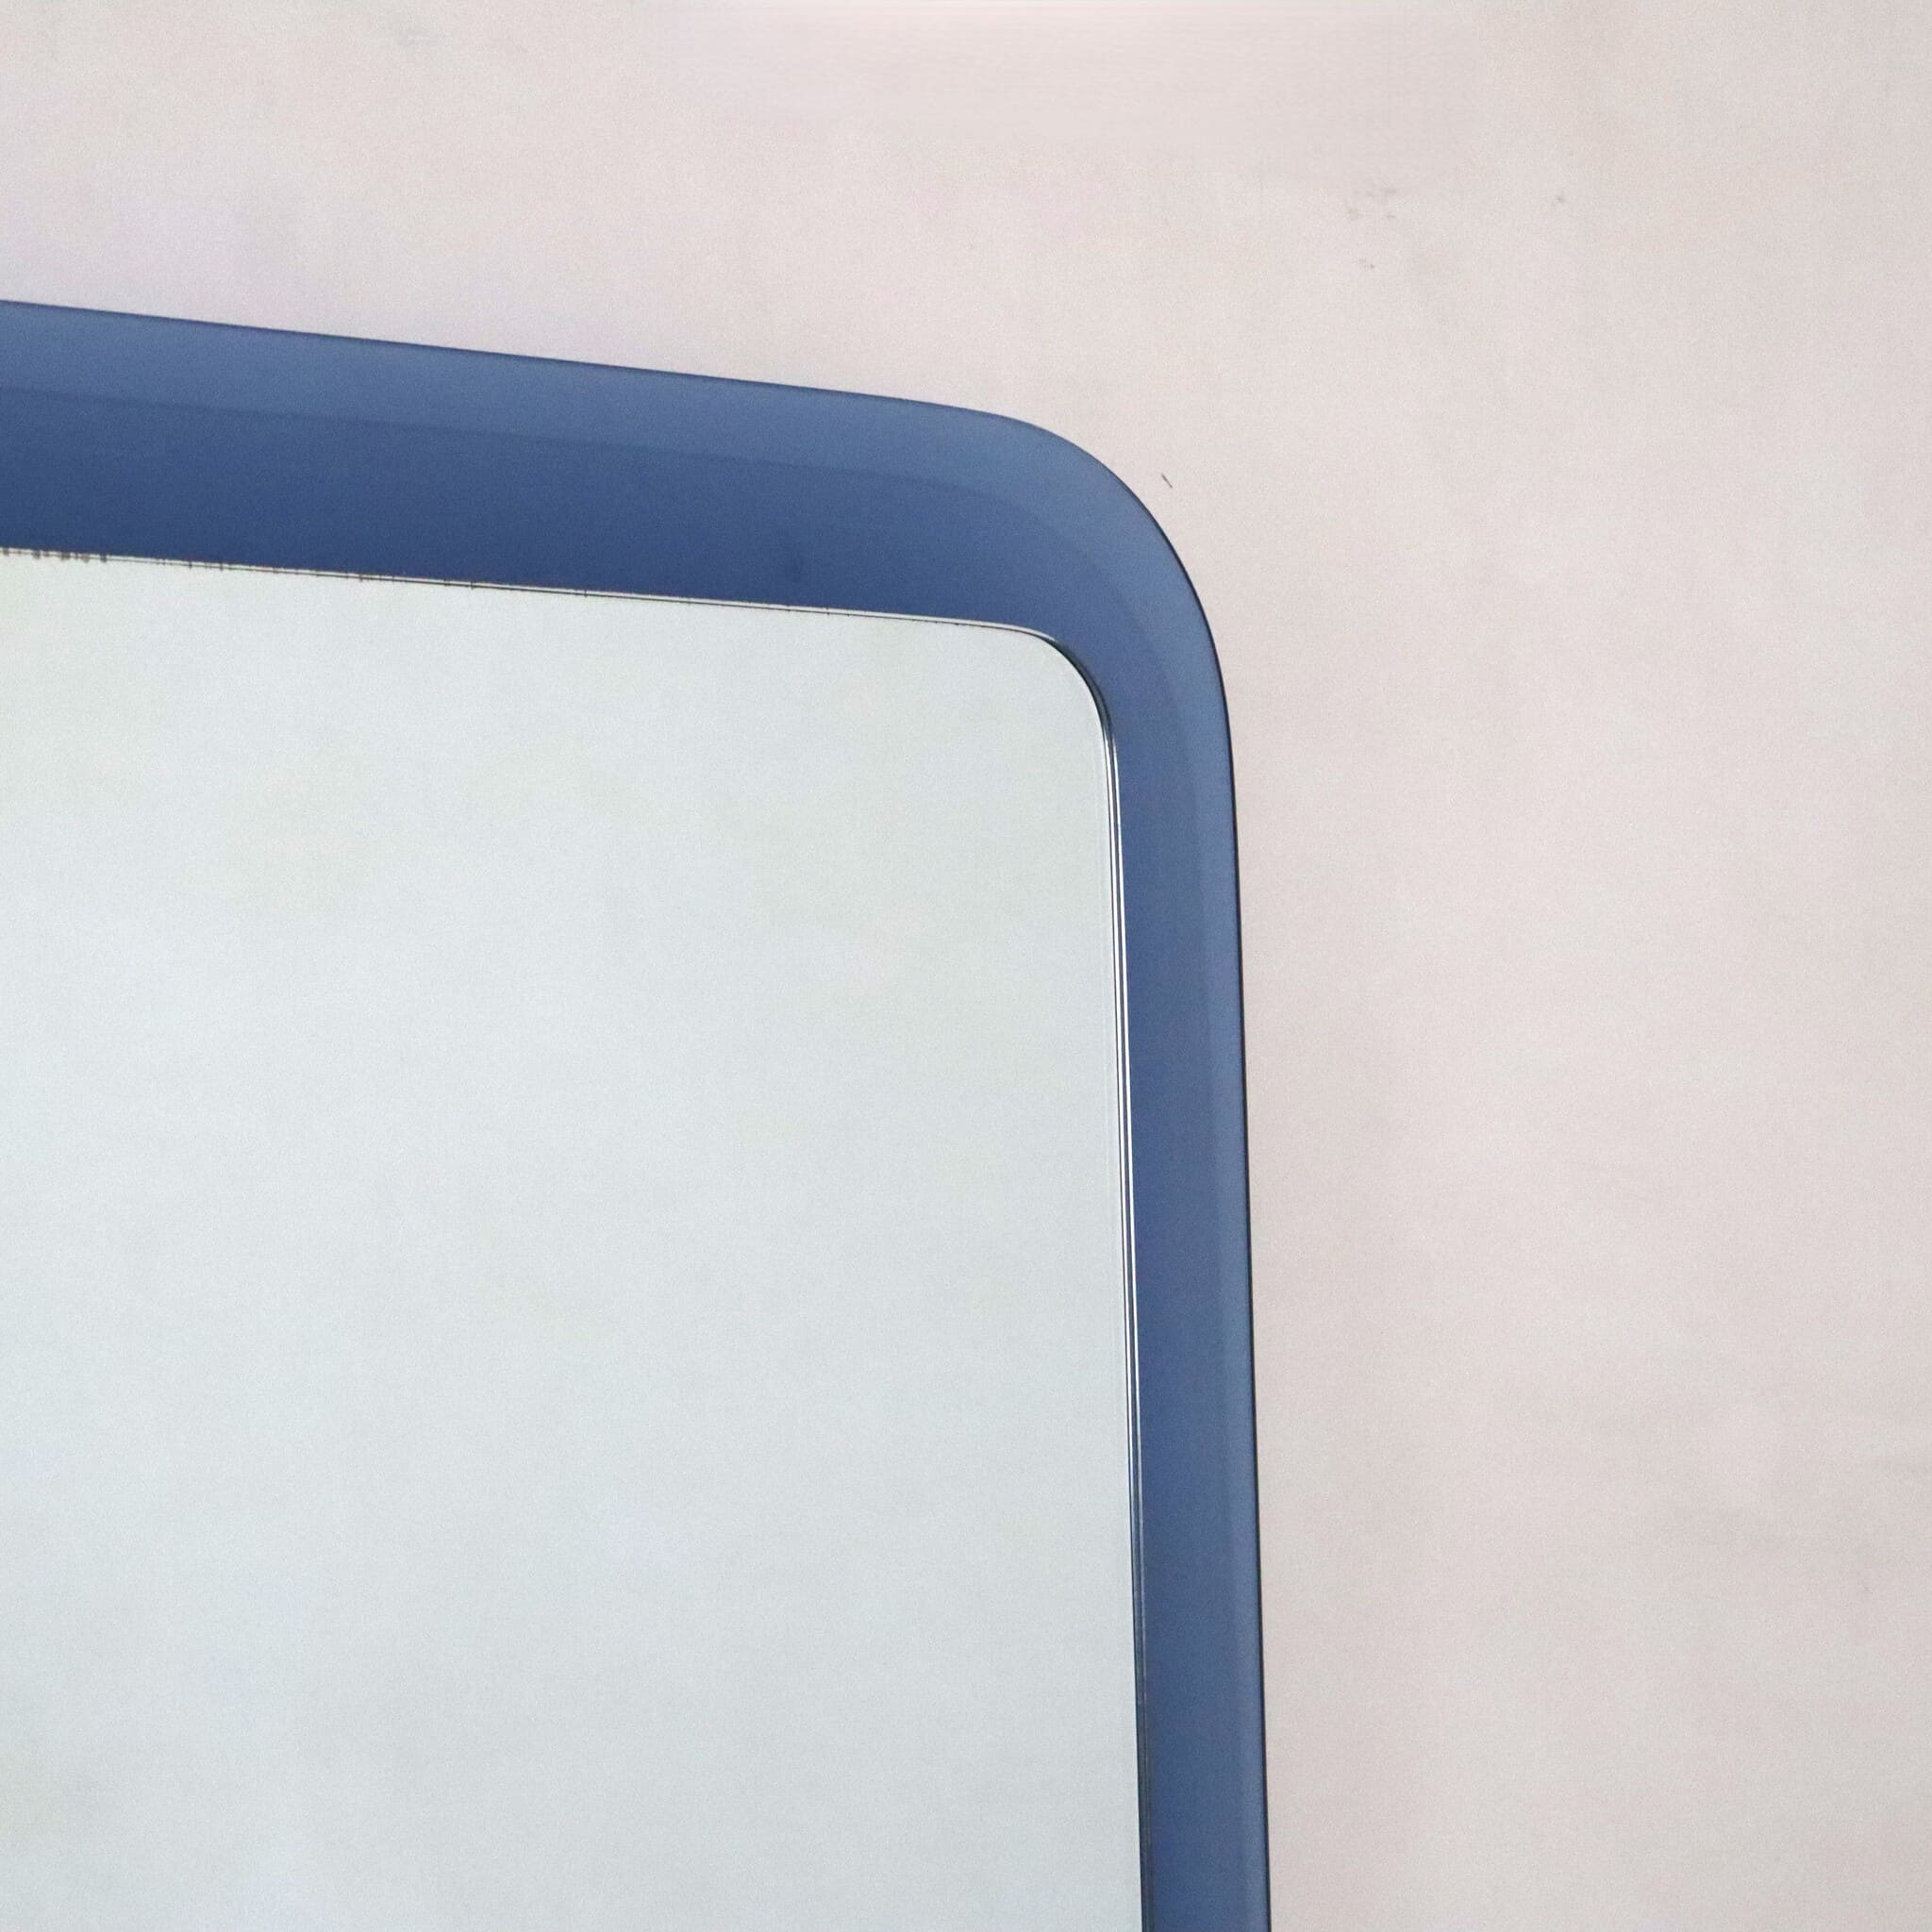 specchio-quadrato-bordi-rotondi-blu-cobalto-anni-70-dettaglio-angolo-destro-alto-visionidepoca